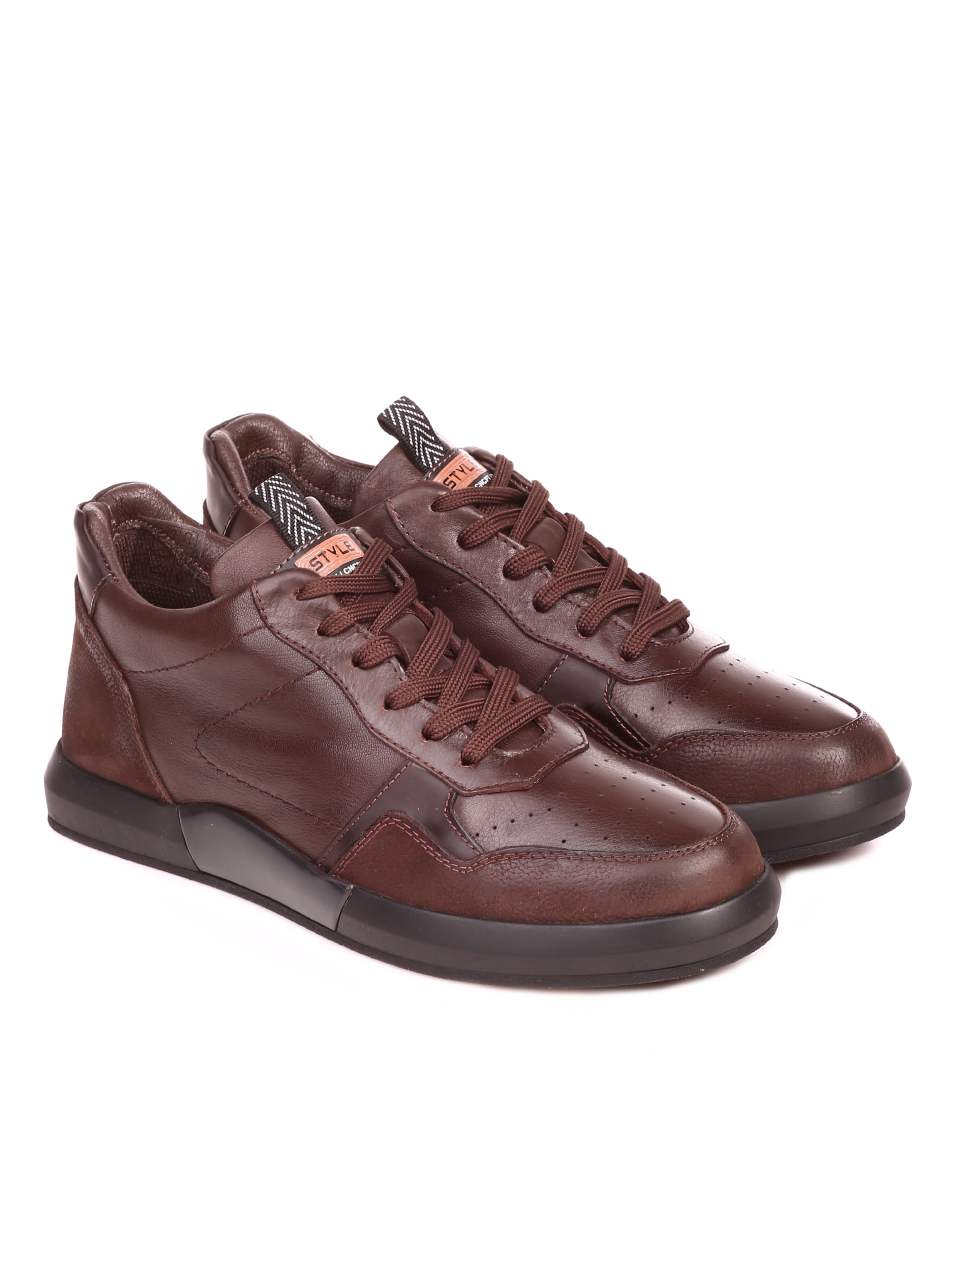 Ежедневни мъжки обувки от естествена кожа и естествен набук 7AT-21859 brown